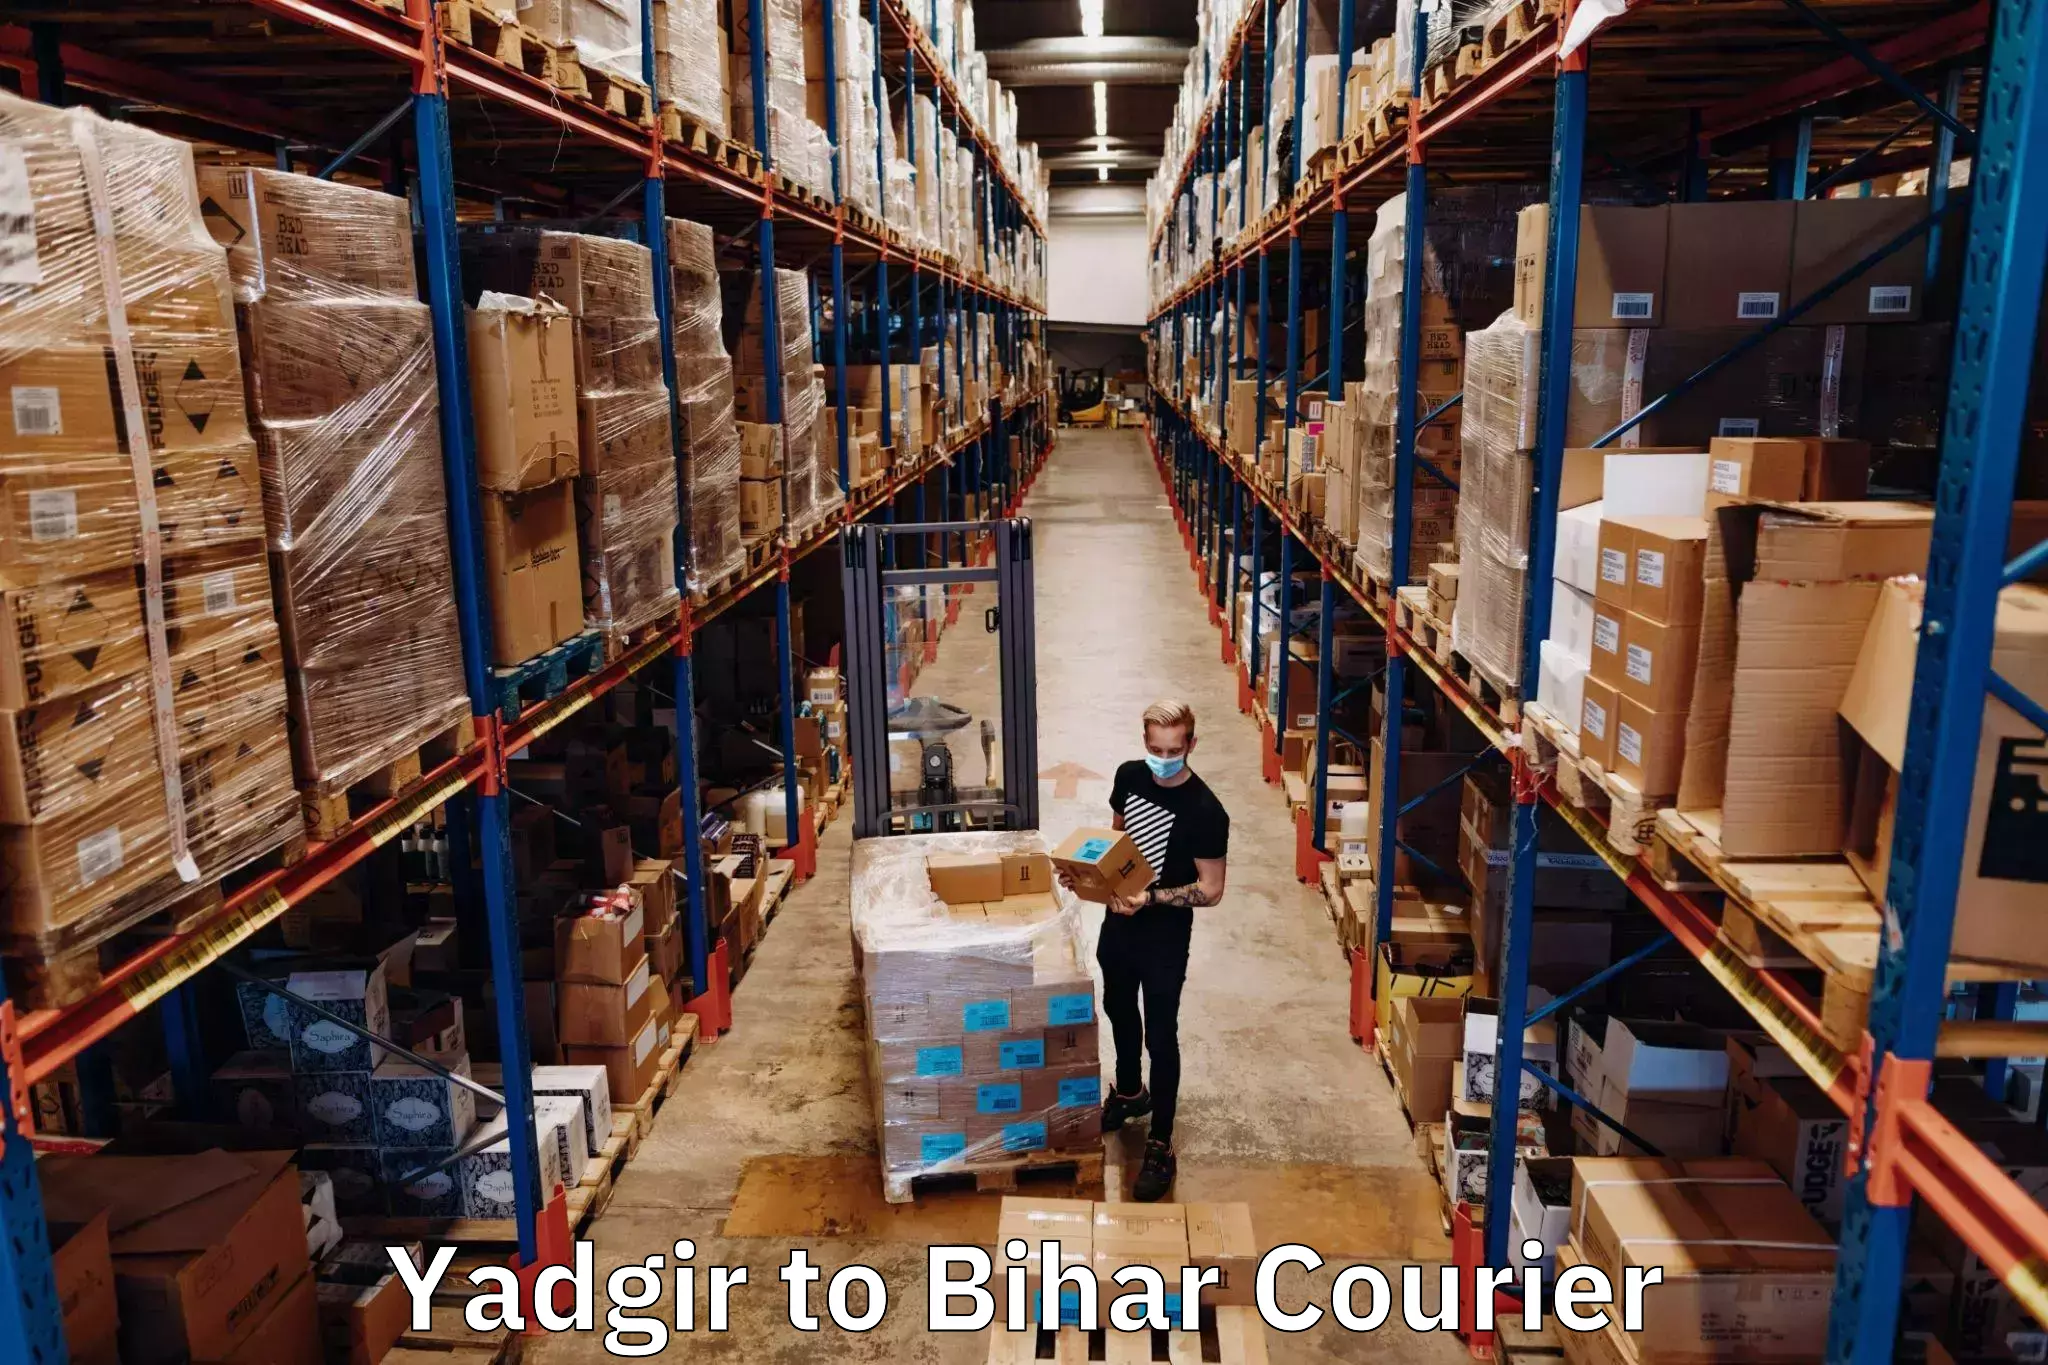 Cargo delivery service Yadgir to Pupri